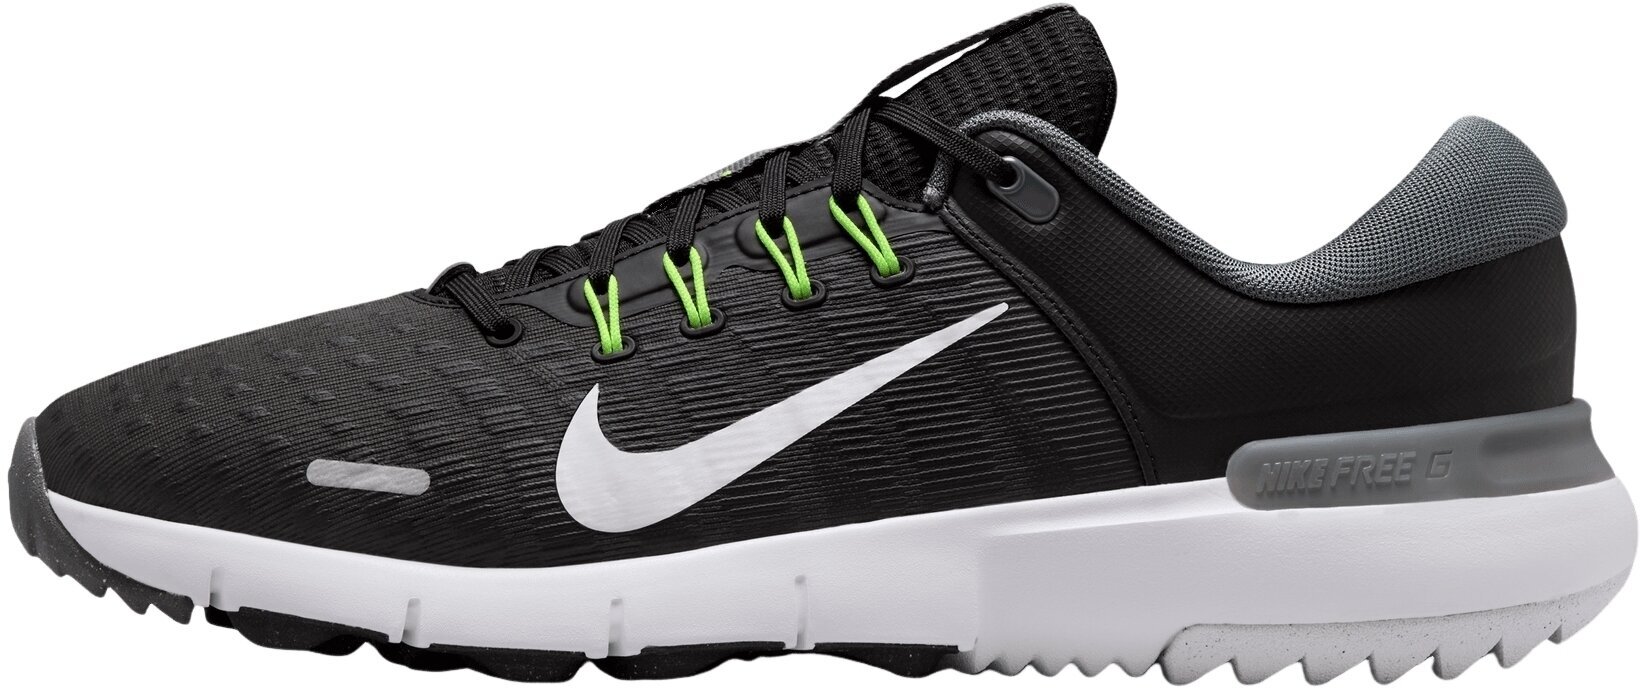 Calçado de golfe para homem Nike Free Golf Unisex Shoes Black/White/Iron Grey/Volt 45